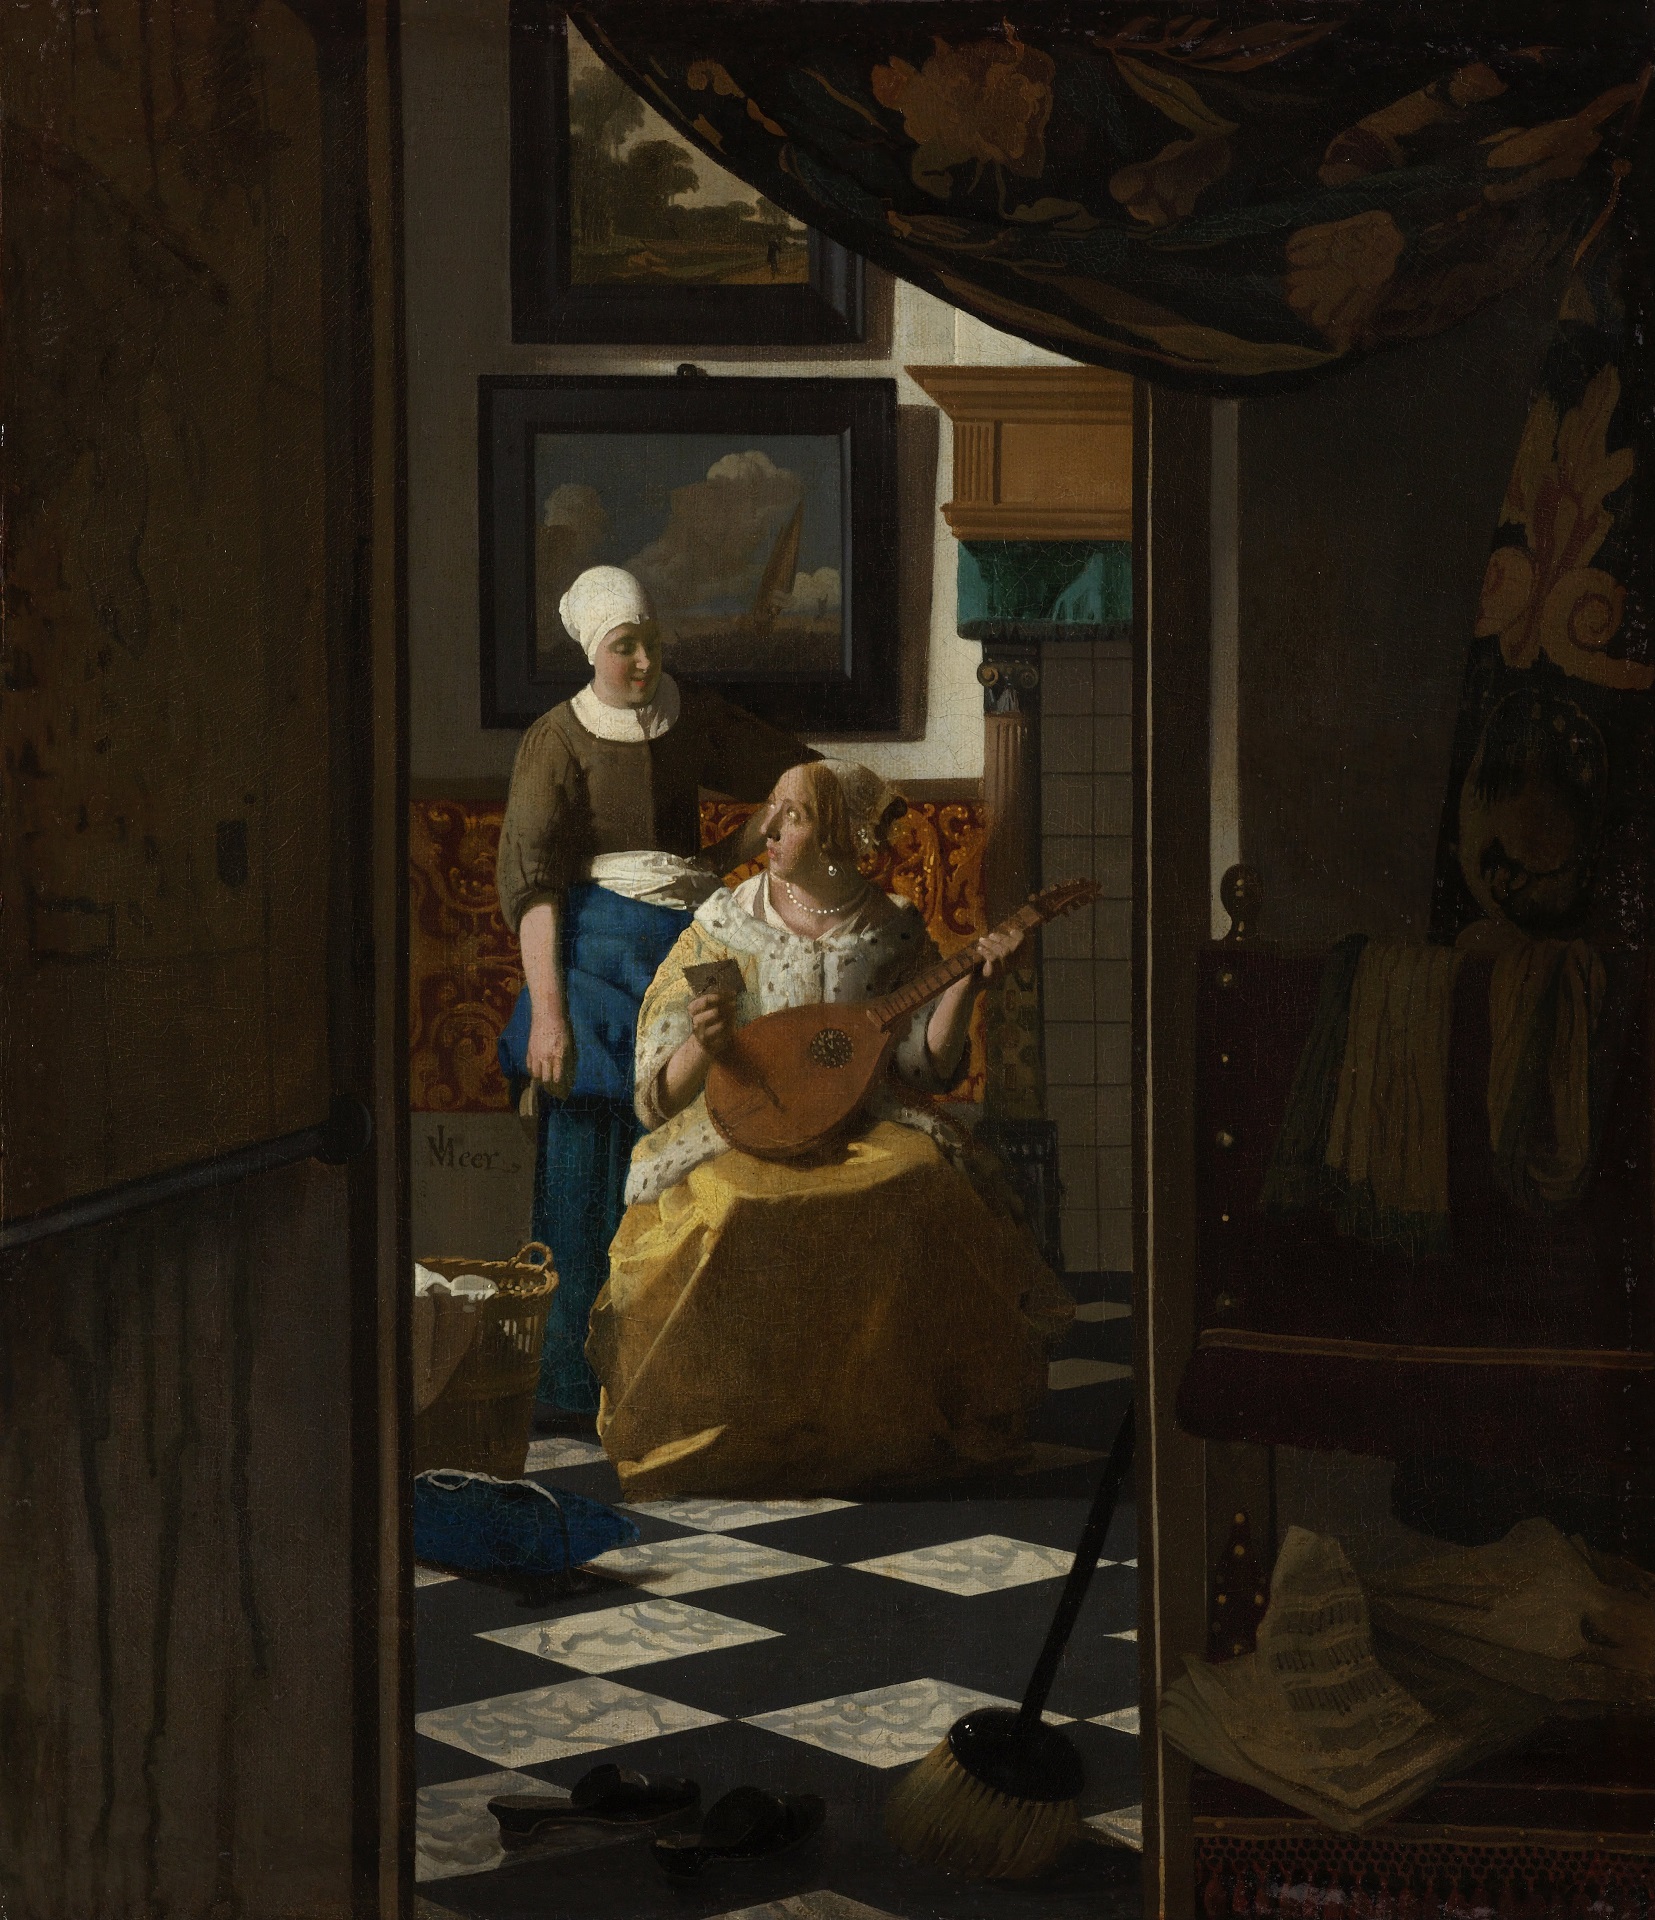 Johannes Vermeer - The Love Letter 1669